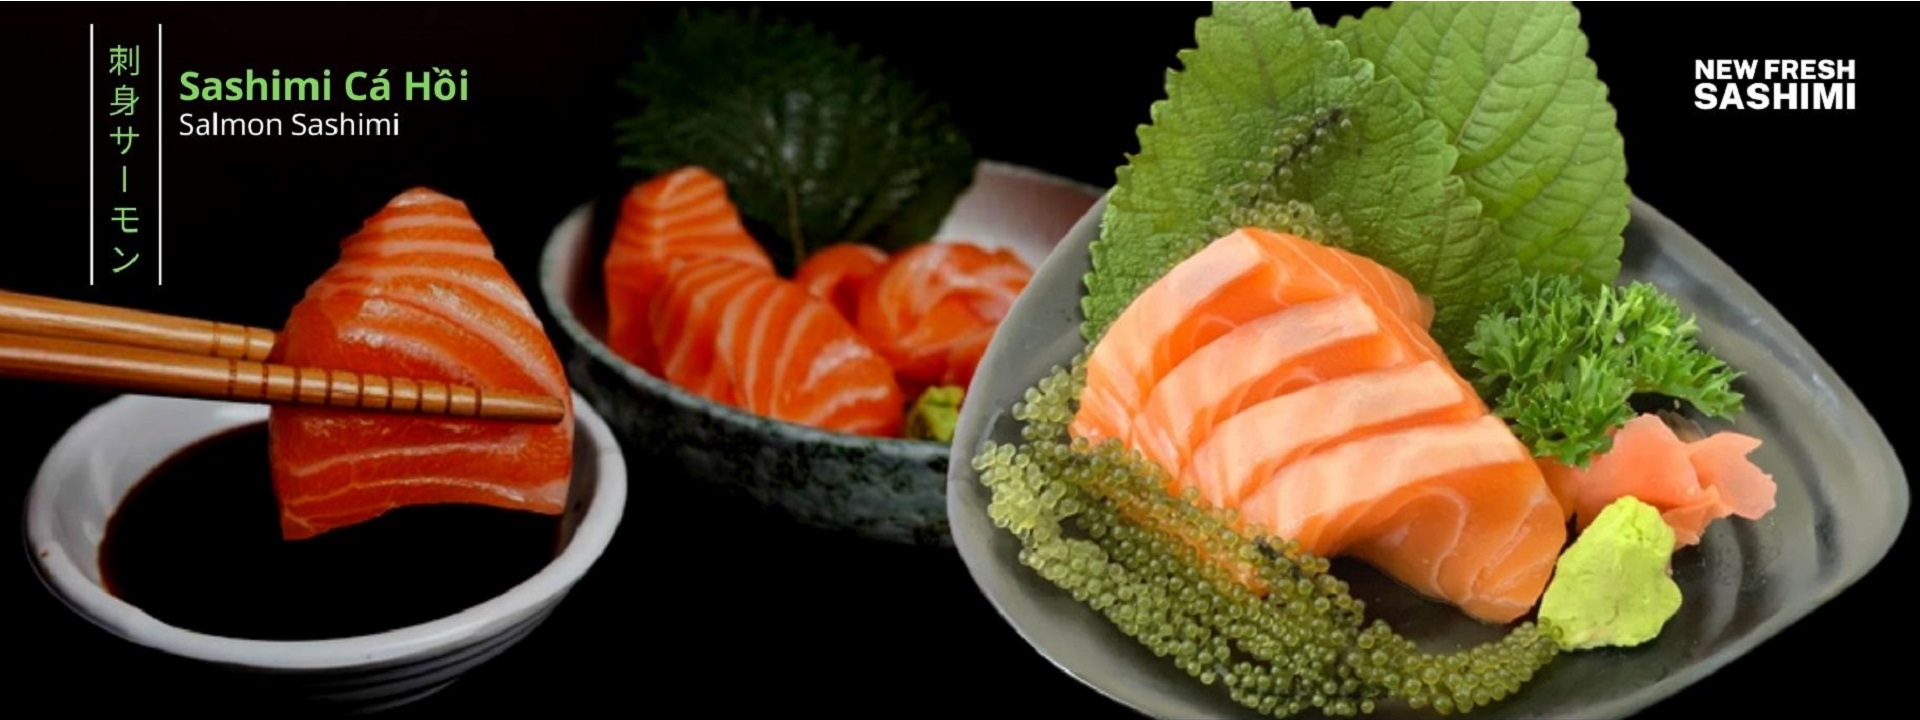 Sashimi Cá Hồi là món ăn truyền thống của Nhật thể hiện sự khéo léo và tinh tế, được chế biến tỉ mỉ từ những lát cá đến từng món gia vị ăn kèm. Sự hòa quyện hoàn hảo trong từng thớ thịt đỏ cam rực rỡ, biến hương vị của cá hồi trở nên hảo hạng. Từng lát từ